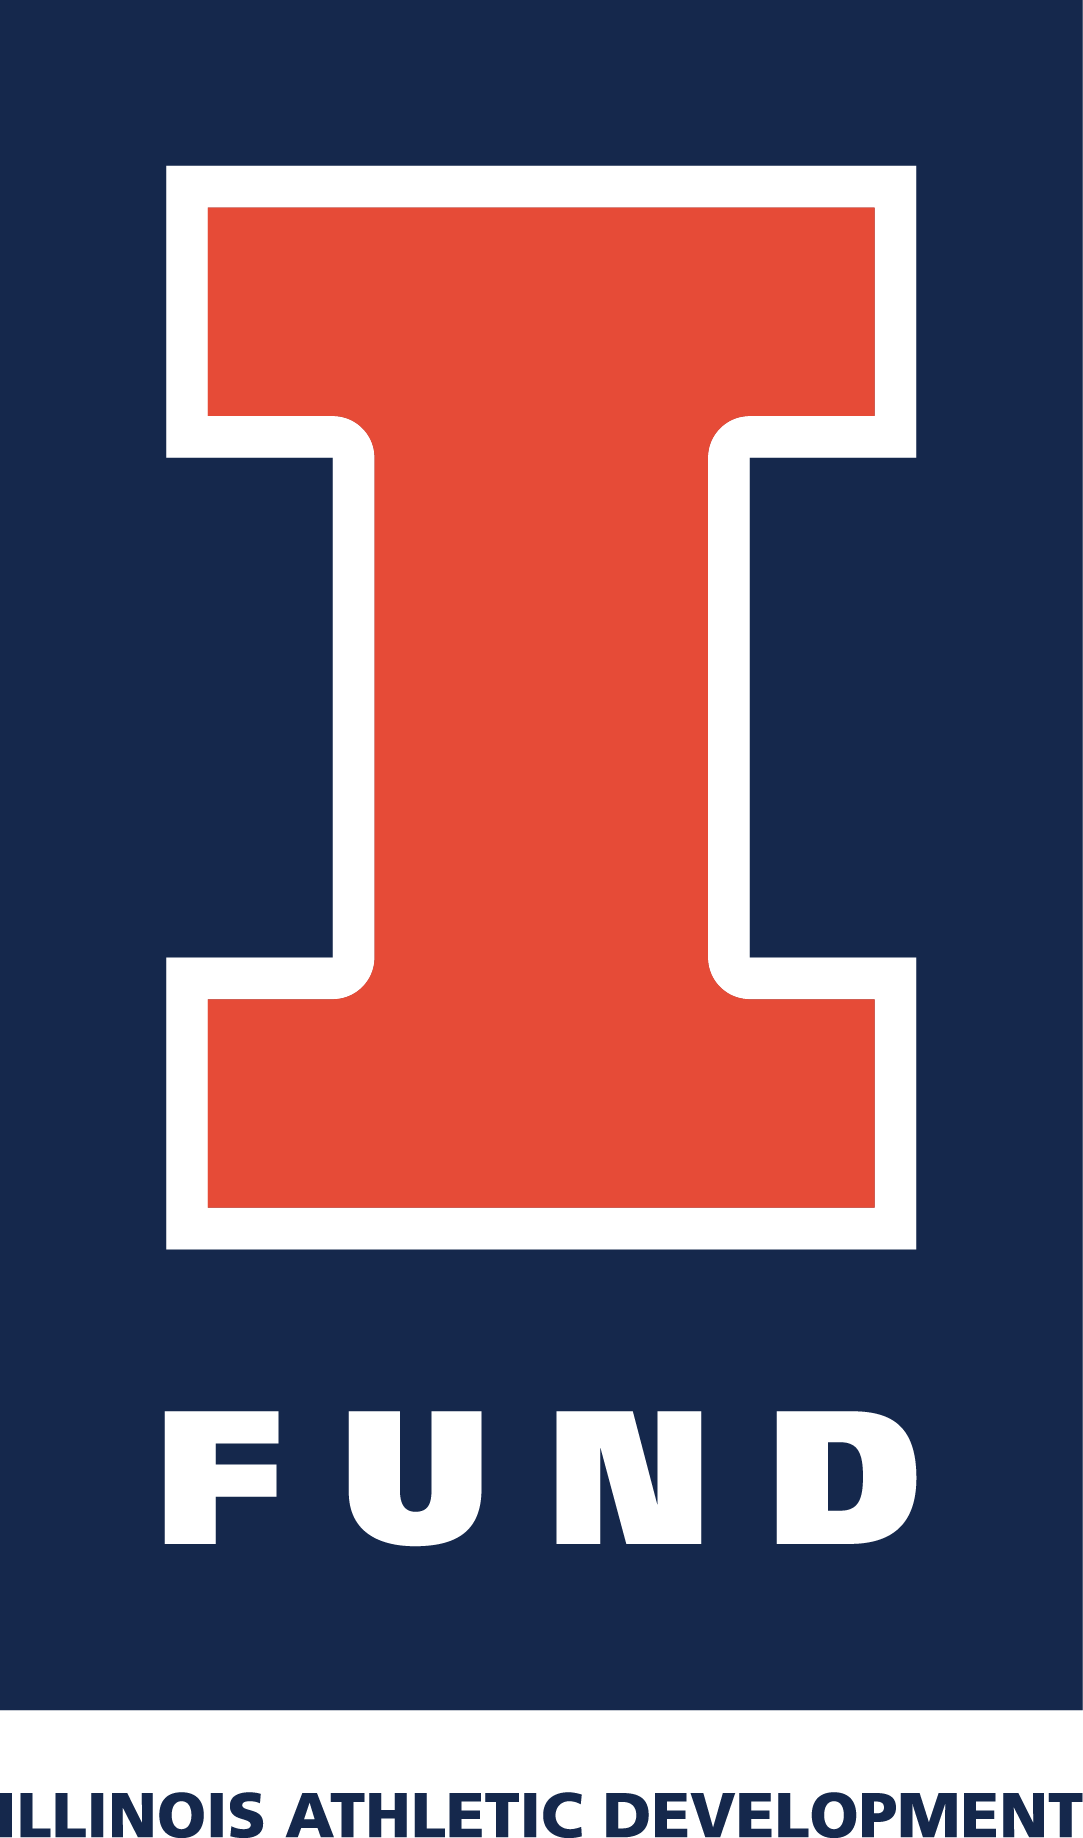 University of Illinois Department of Intercollegiate Athletics - I-Fund Rebrand